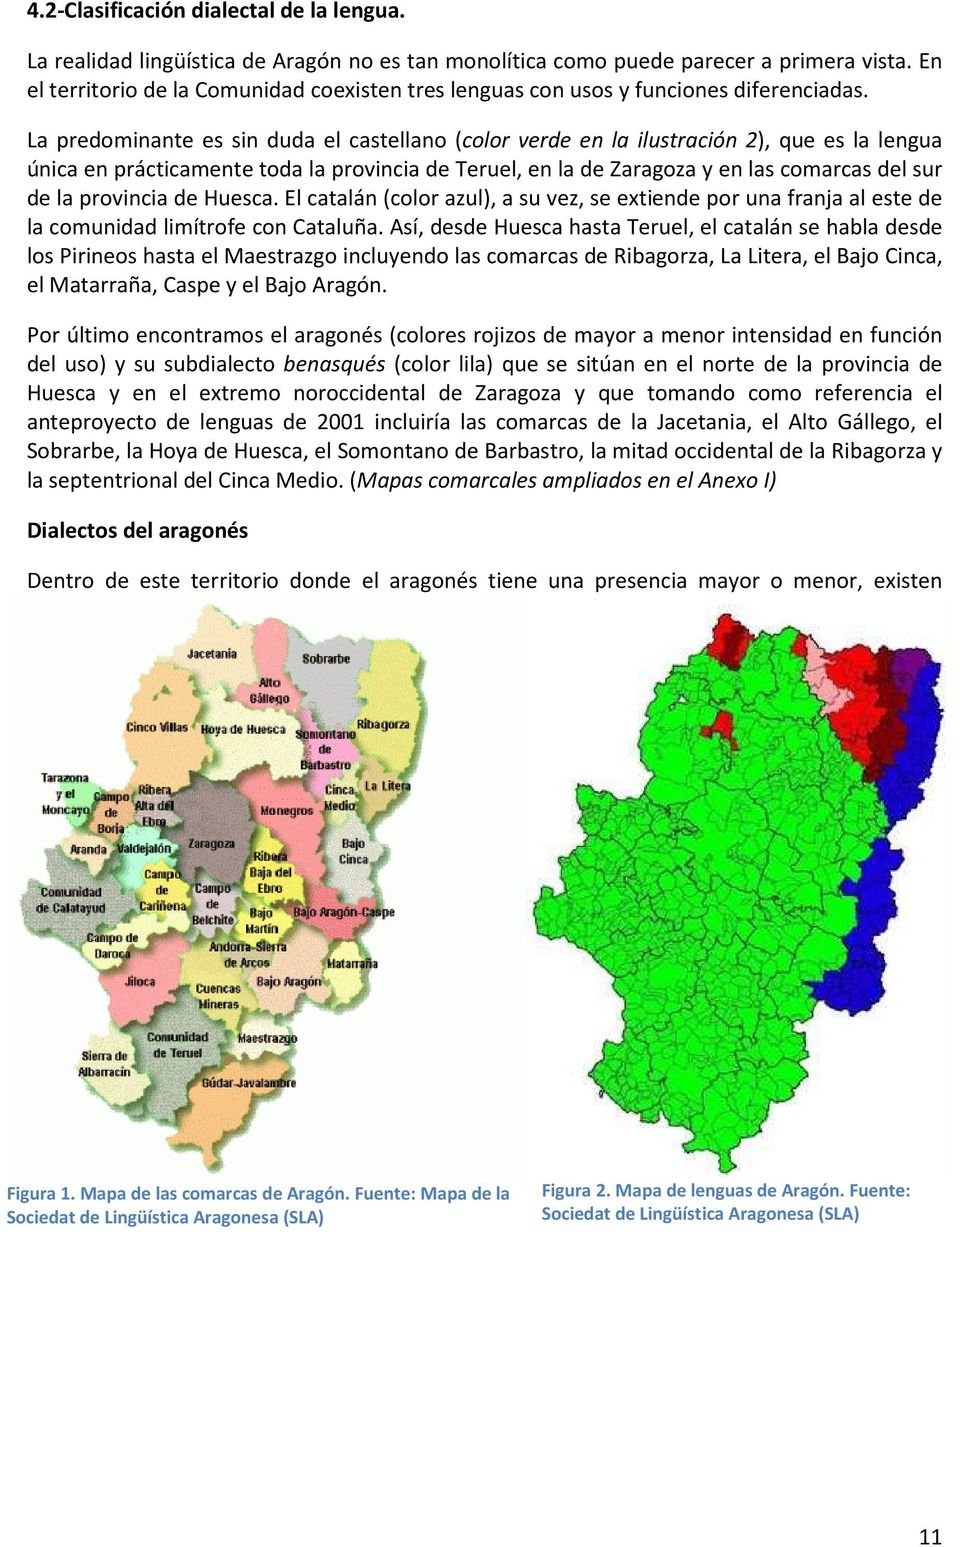 La predominante es sin duda el castellano (color verde en la ilustración 2), que es la lengua única en prácticamente toda la provincia de Teruel, en la de Zaragoza y en las comarcas del sur de la